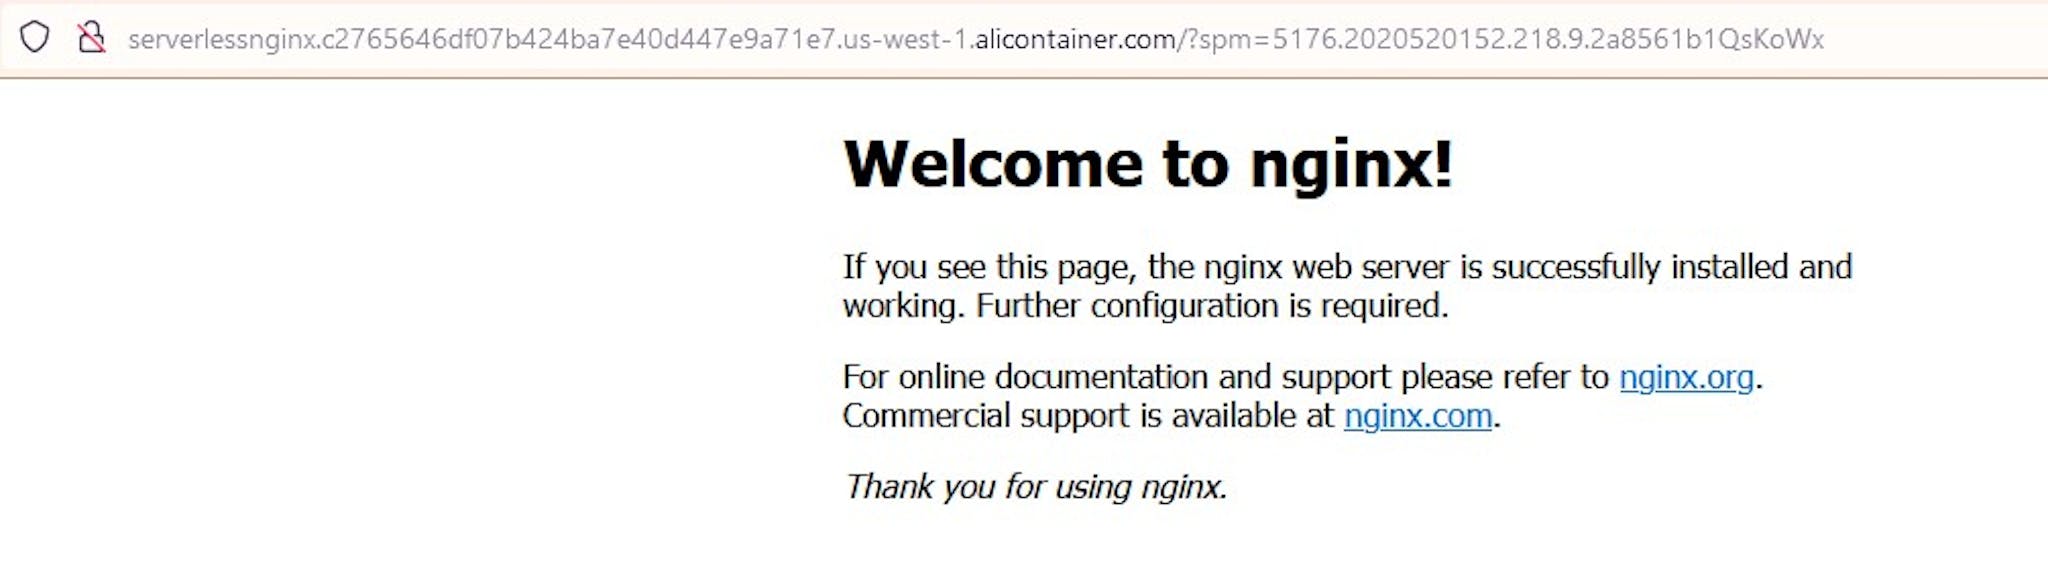 Nginx deployed on Serverless Kubernetes and exposed with Ingress